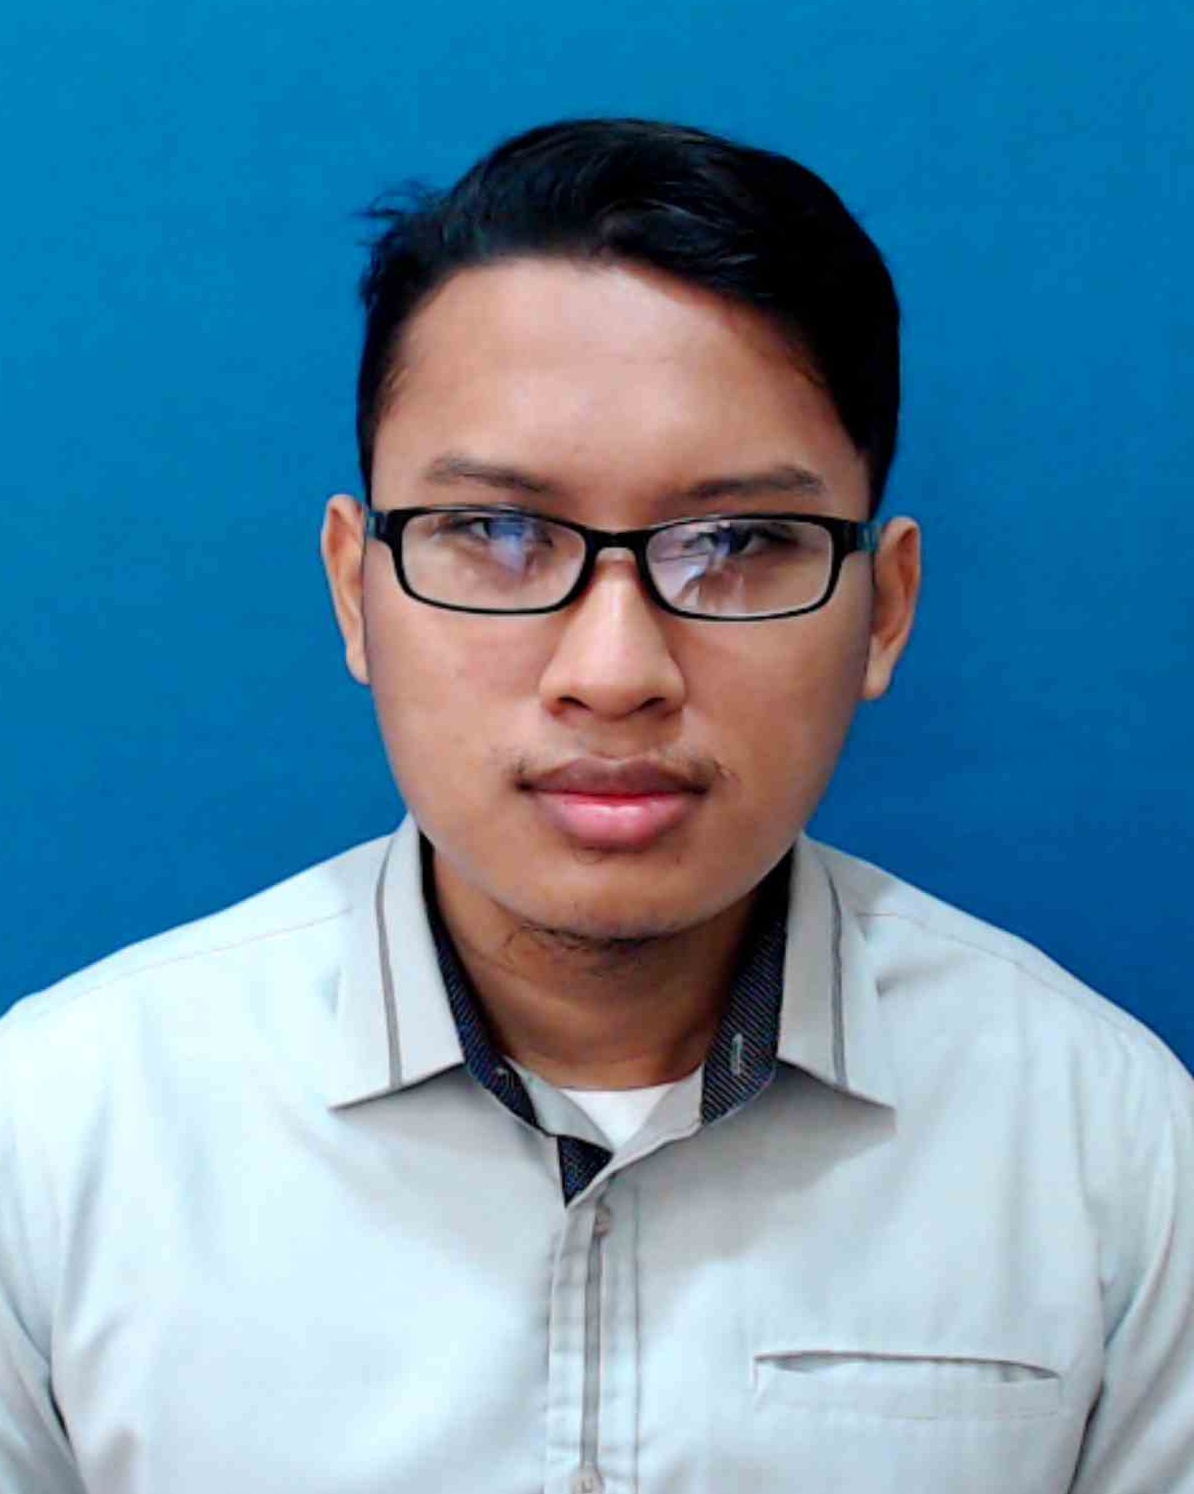 Muhammad Hannan Syakirin Bin Mohd Sufian